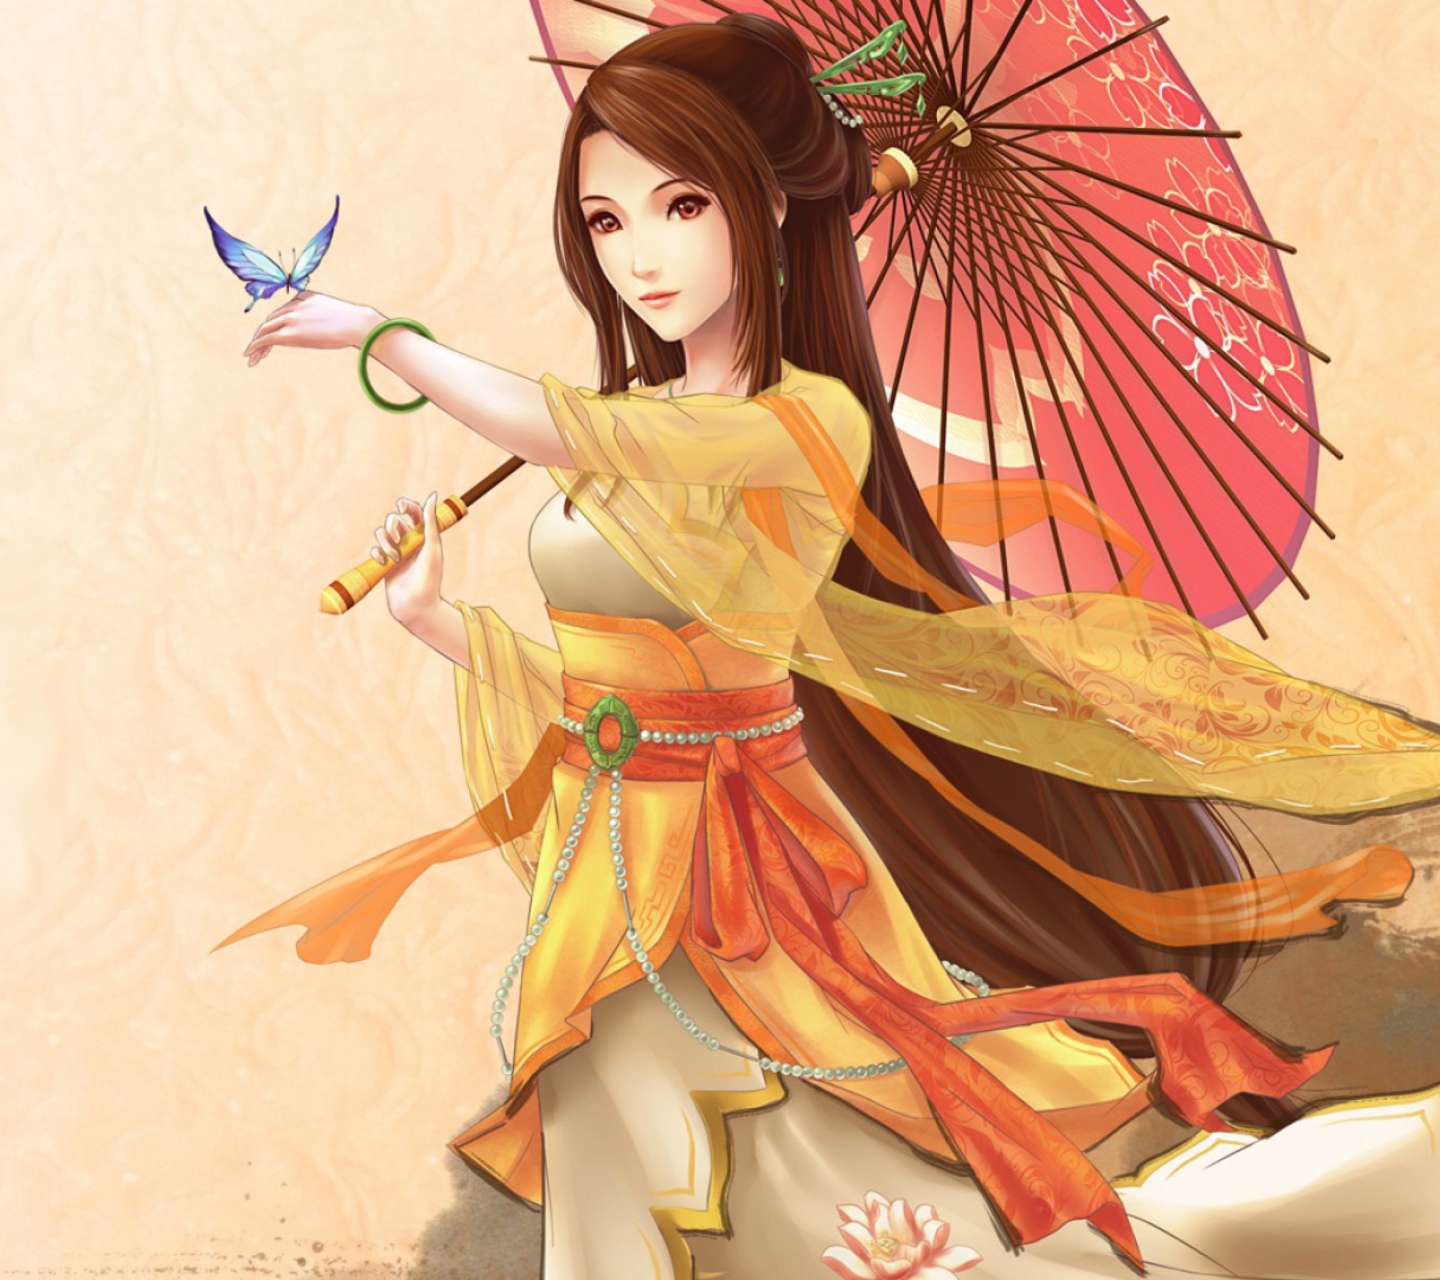 Japanese Woman & Butterfly screenshot #1 1440x1280